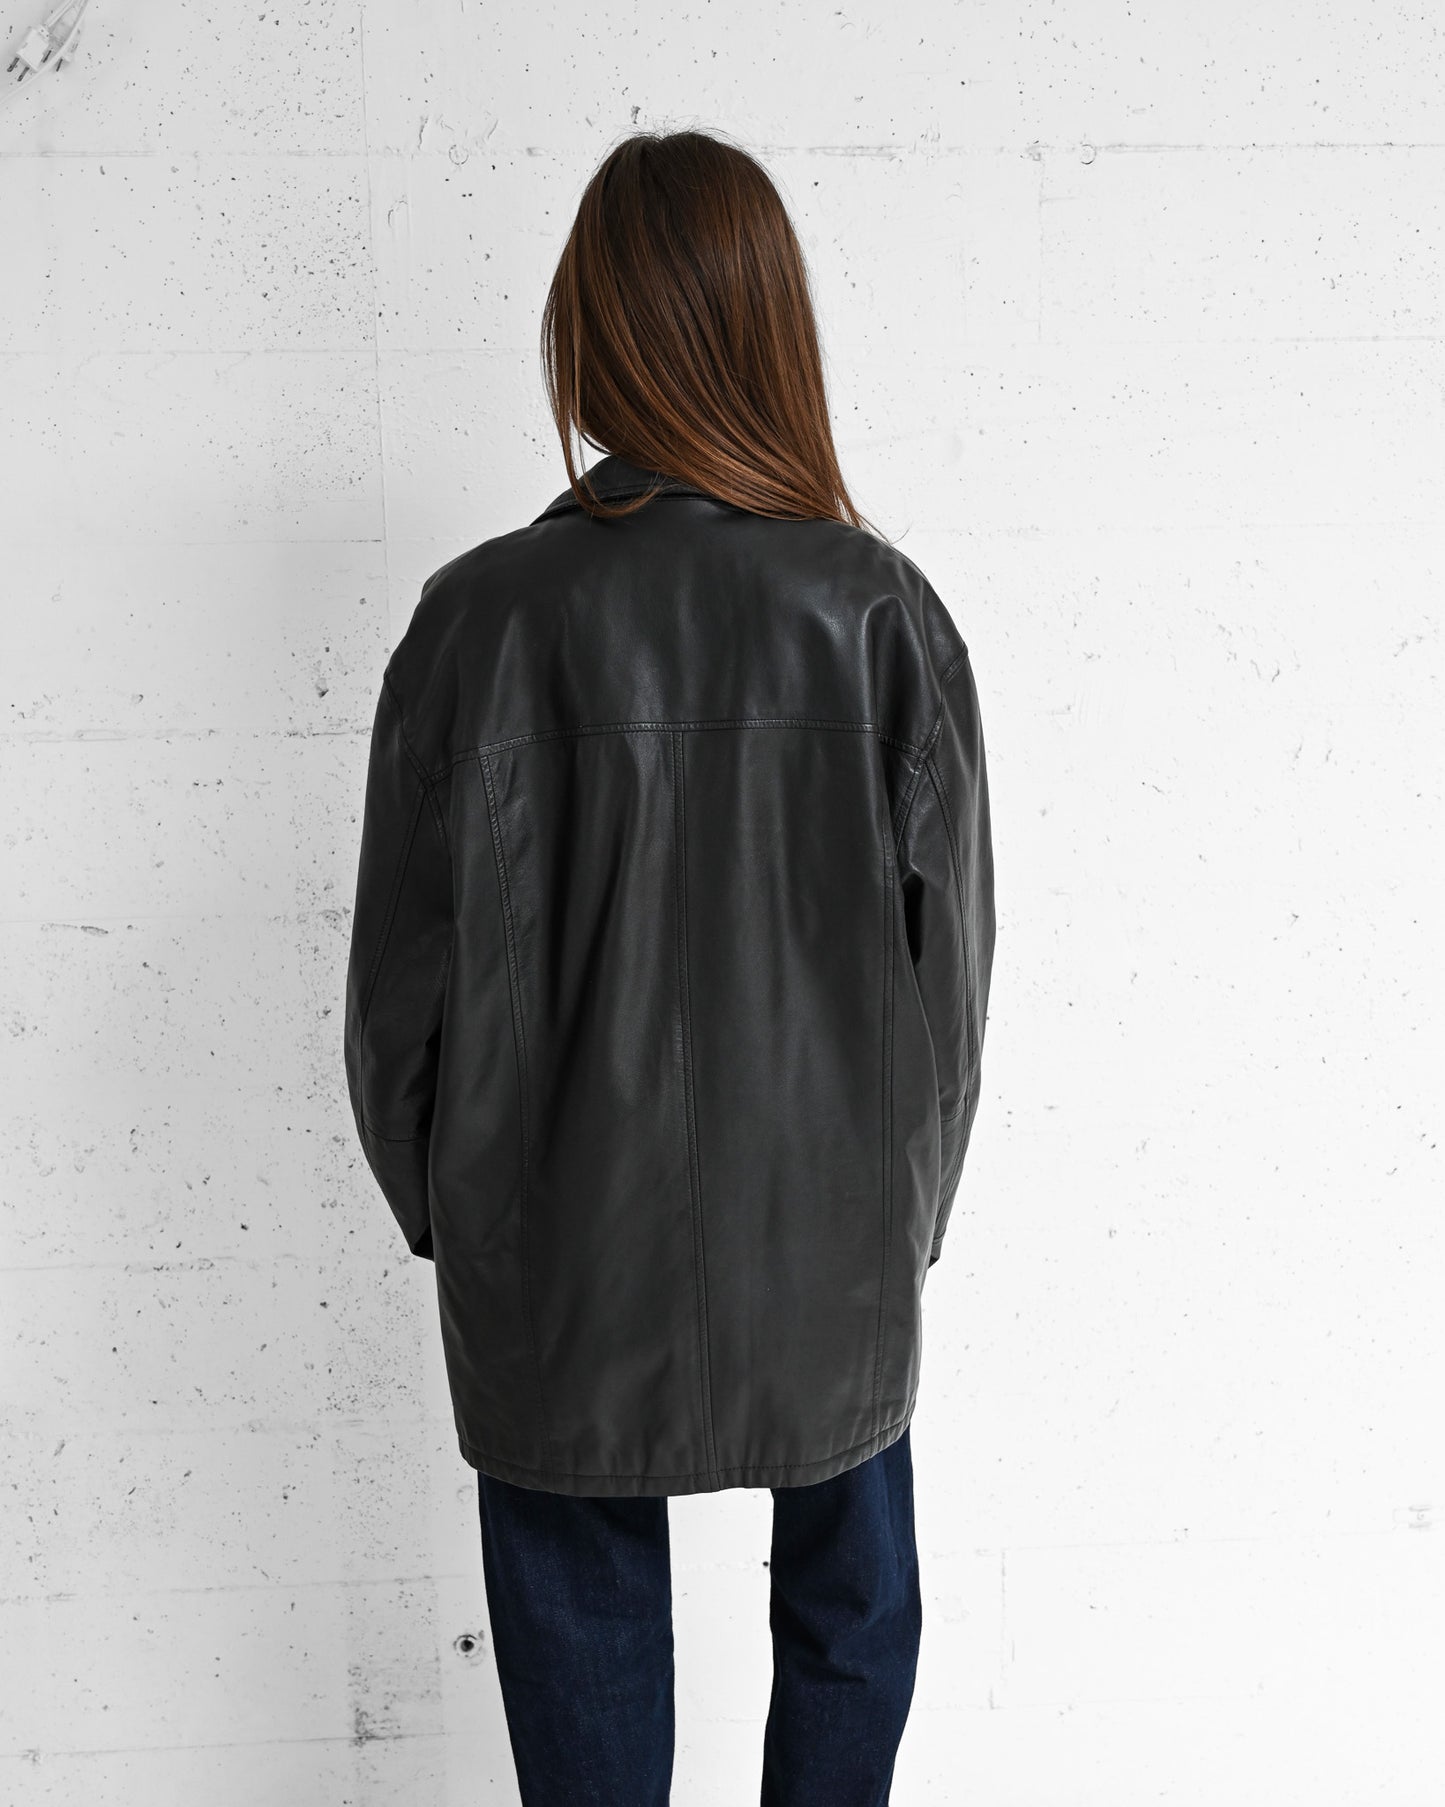 Black Paneled Leather Jacket (L)